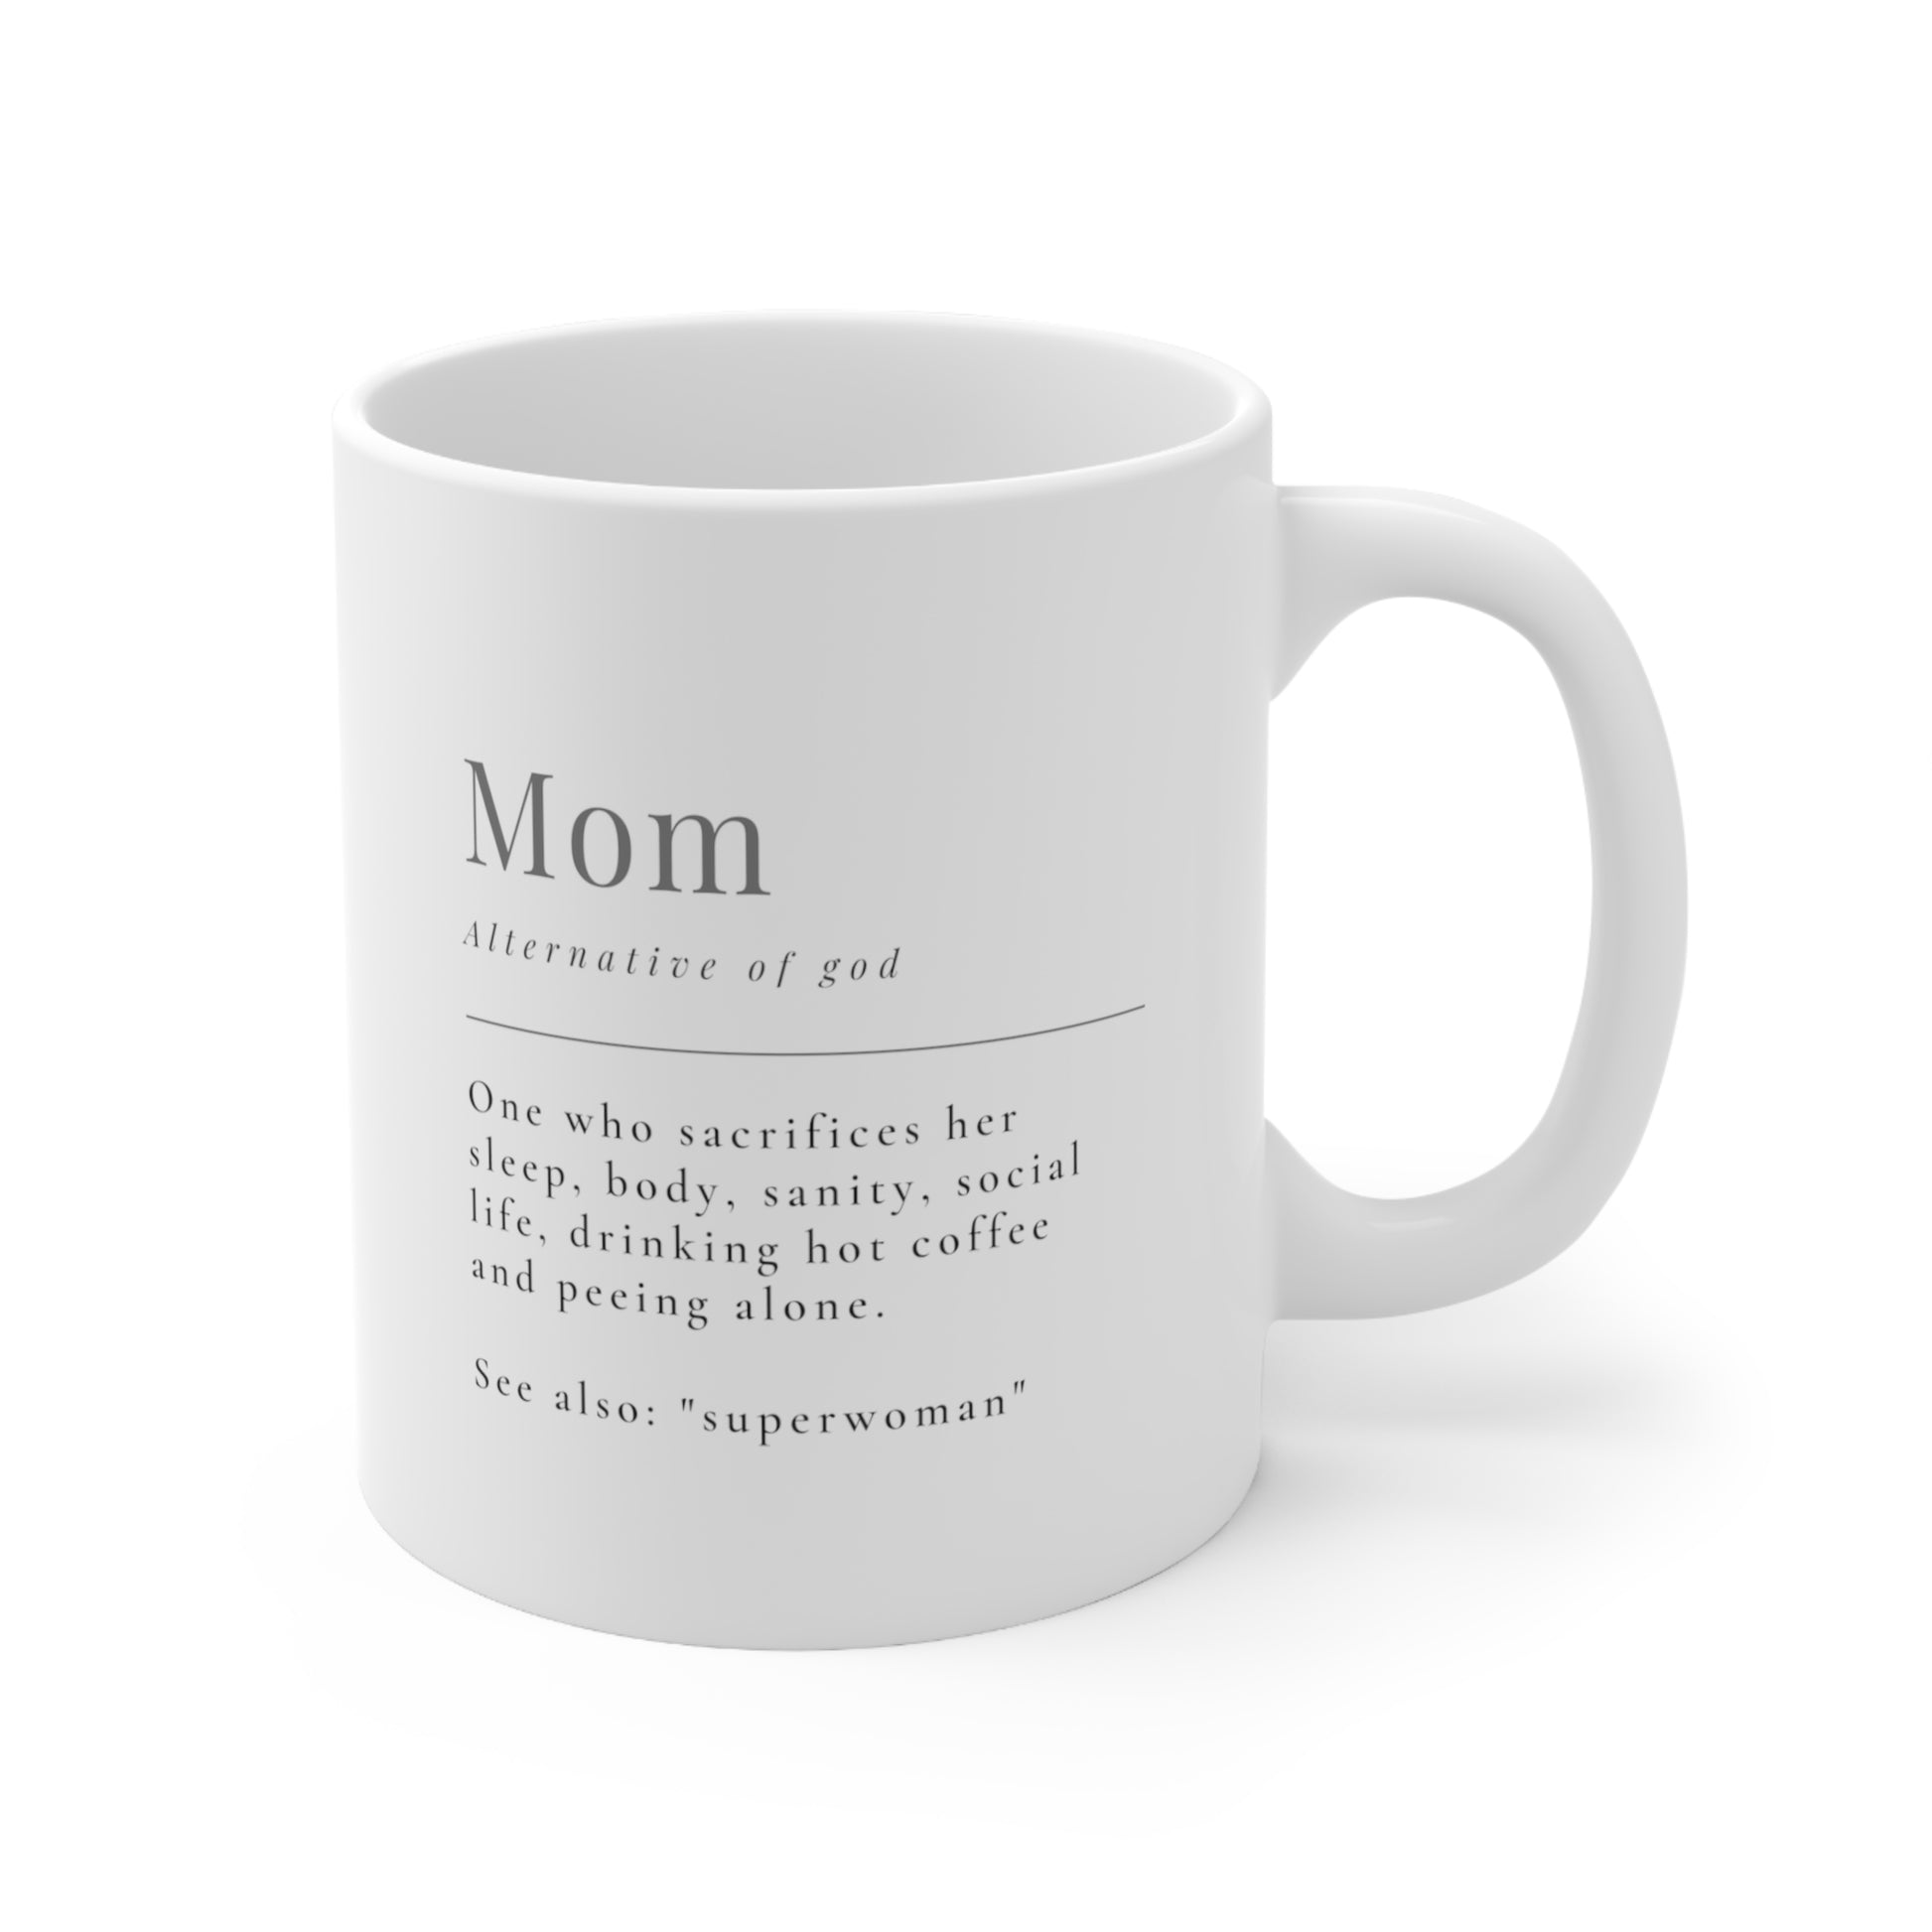 Superwomen Mug for Mom - Ceramic Mug 11oz